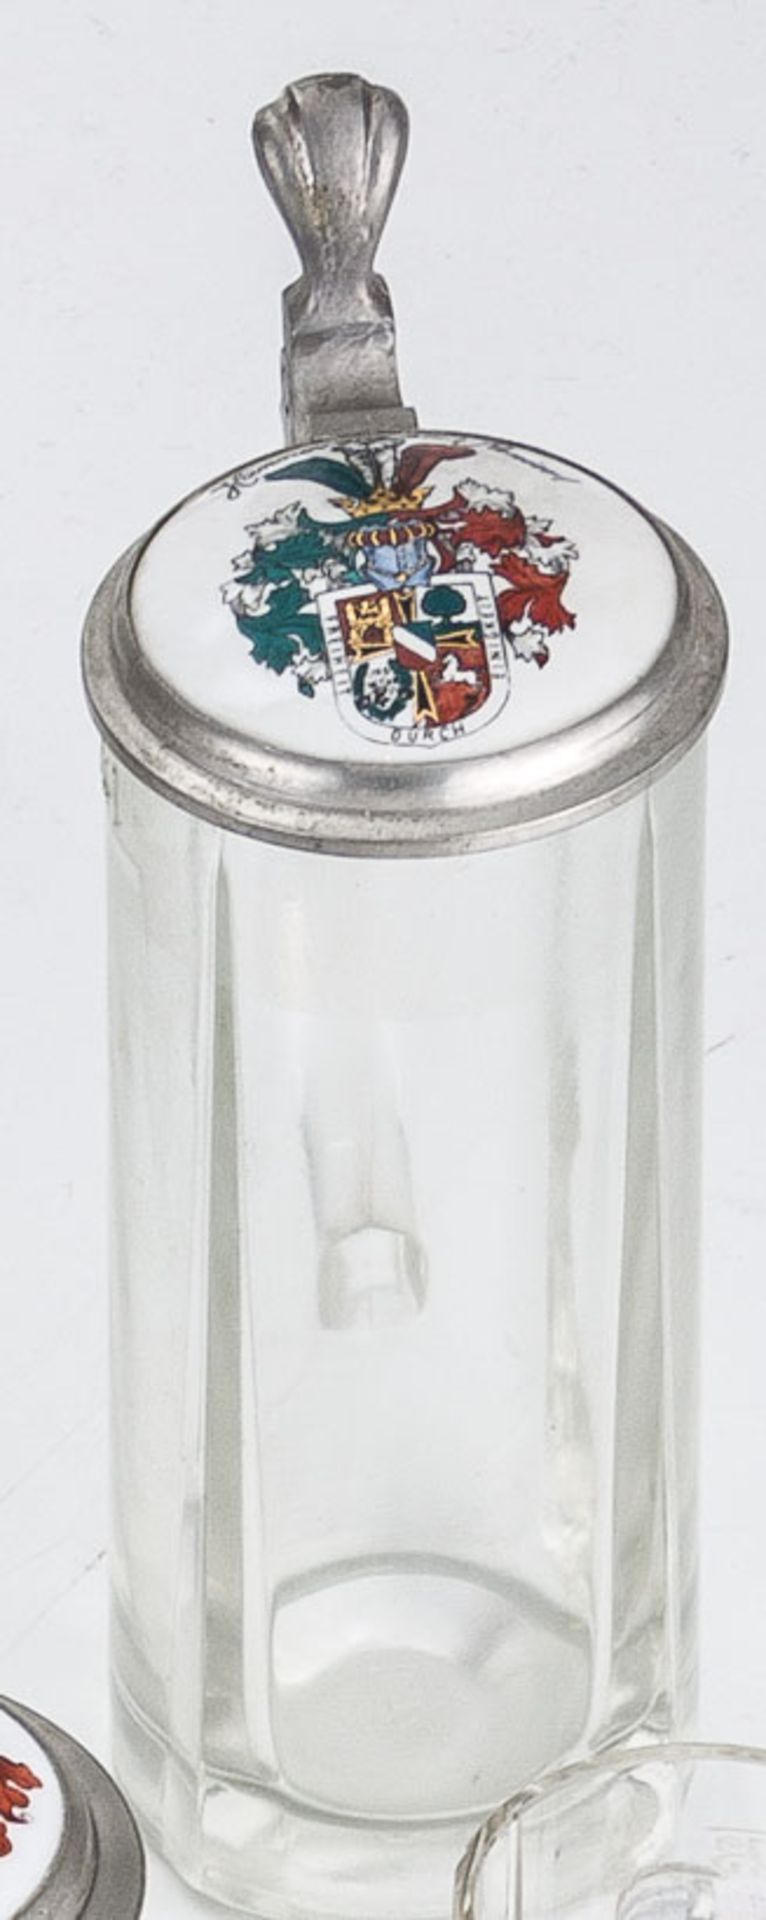 "Cheruscia sei's Panier"Datiert 1901Burschenschaft Cheruscia Hannover. Wappen in den Farben